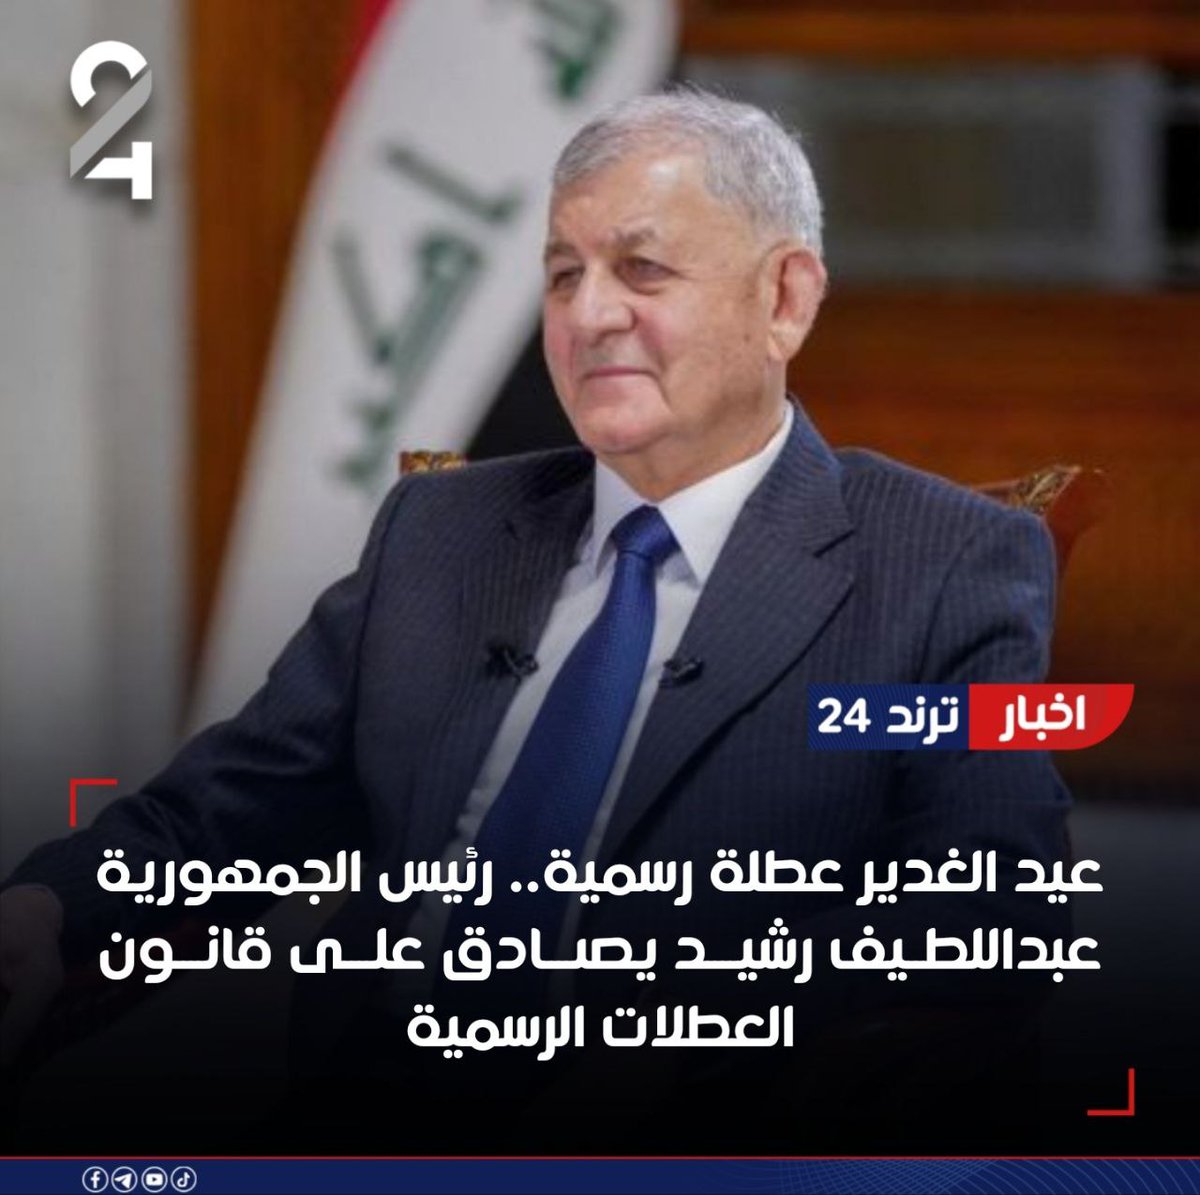 #عيد_الغدير_عطلة_رسمية .. 
رئيس جمهورية العراق عبد اللطيف رشيـد يصادق على قانون العطلات الرسمية الذي صوت عليه مجلس النواب العراقي .